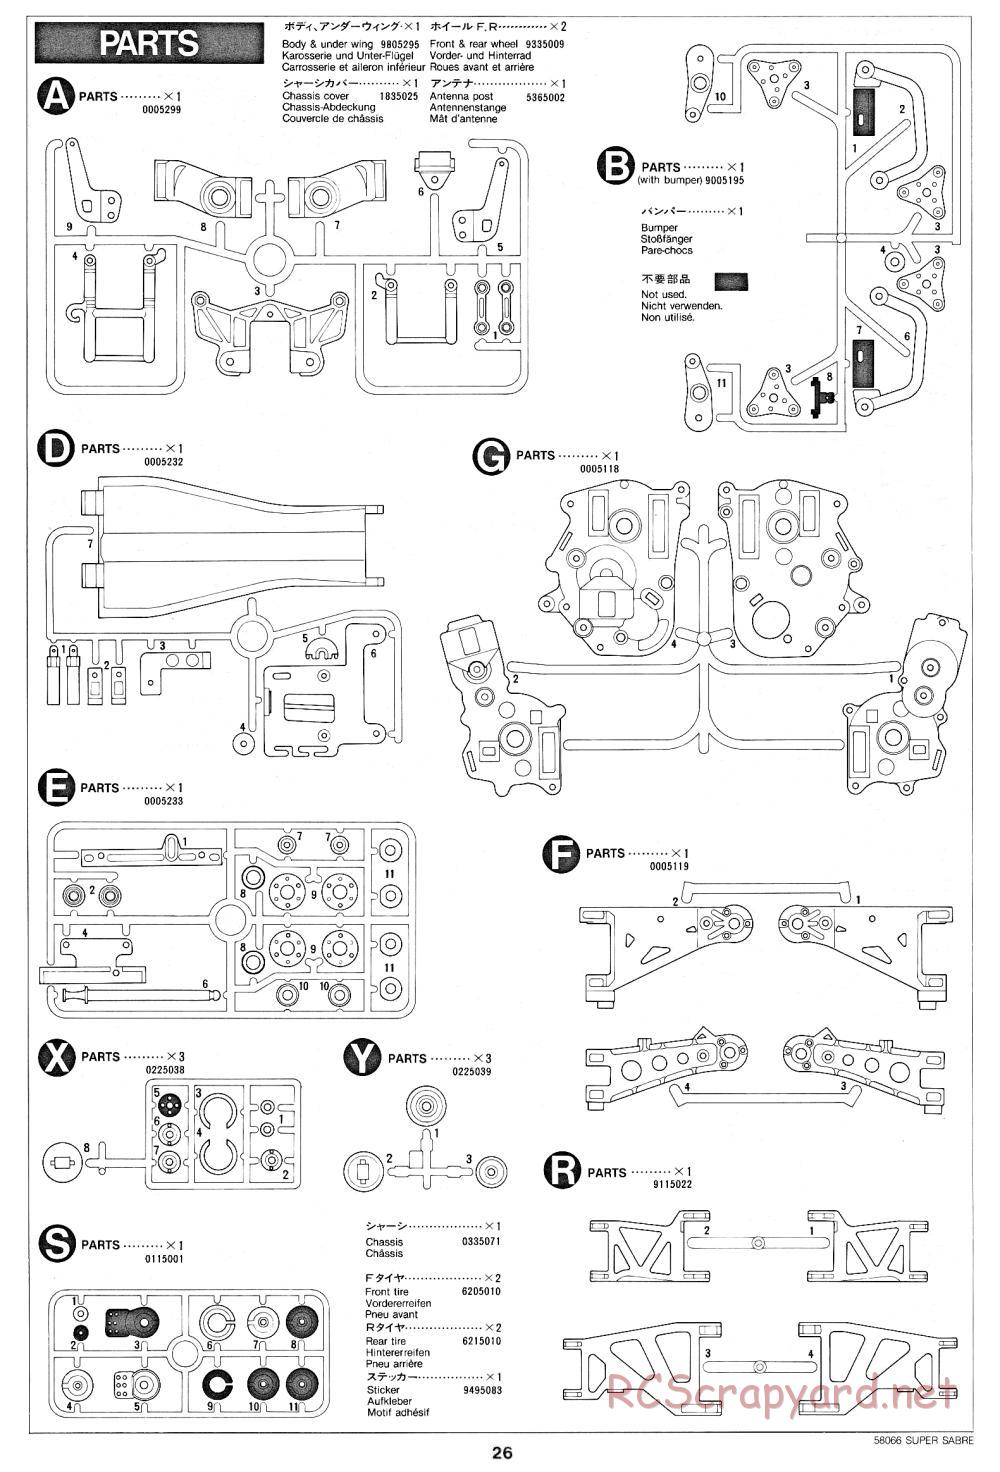 Tamiya - Super Sabre - 58066 - Manual - Page 26